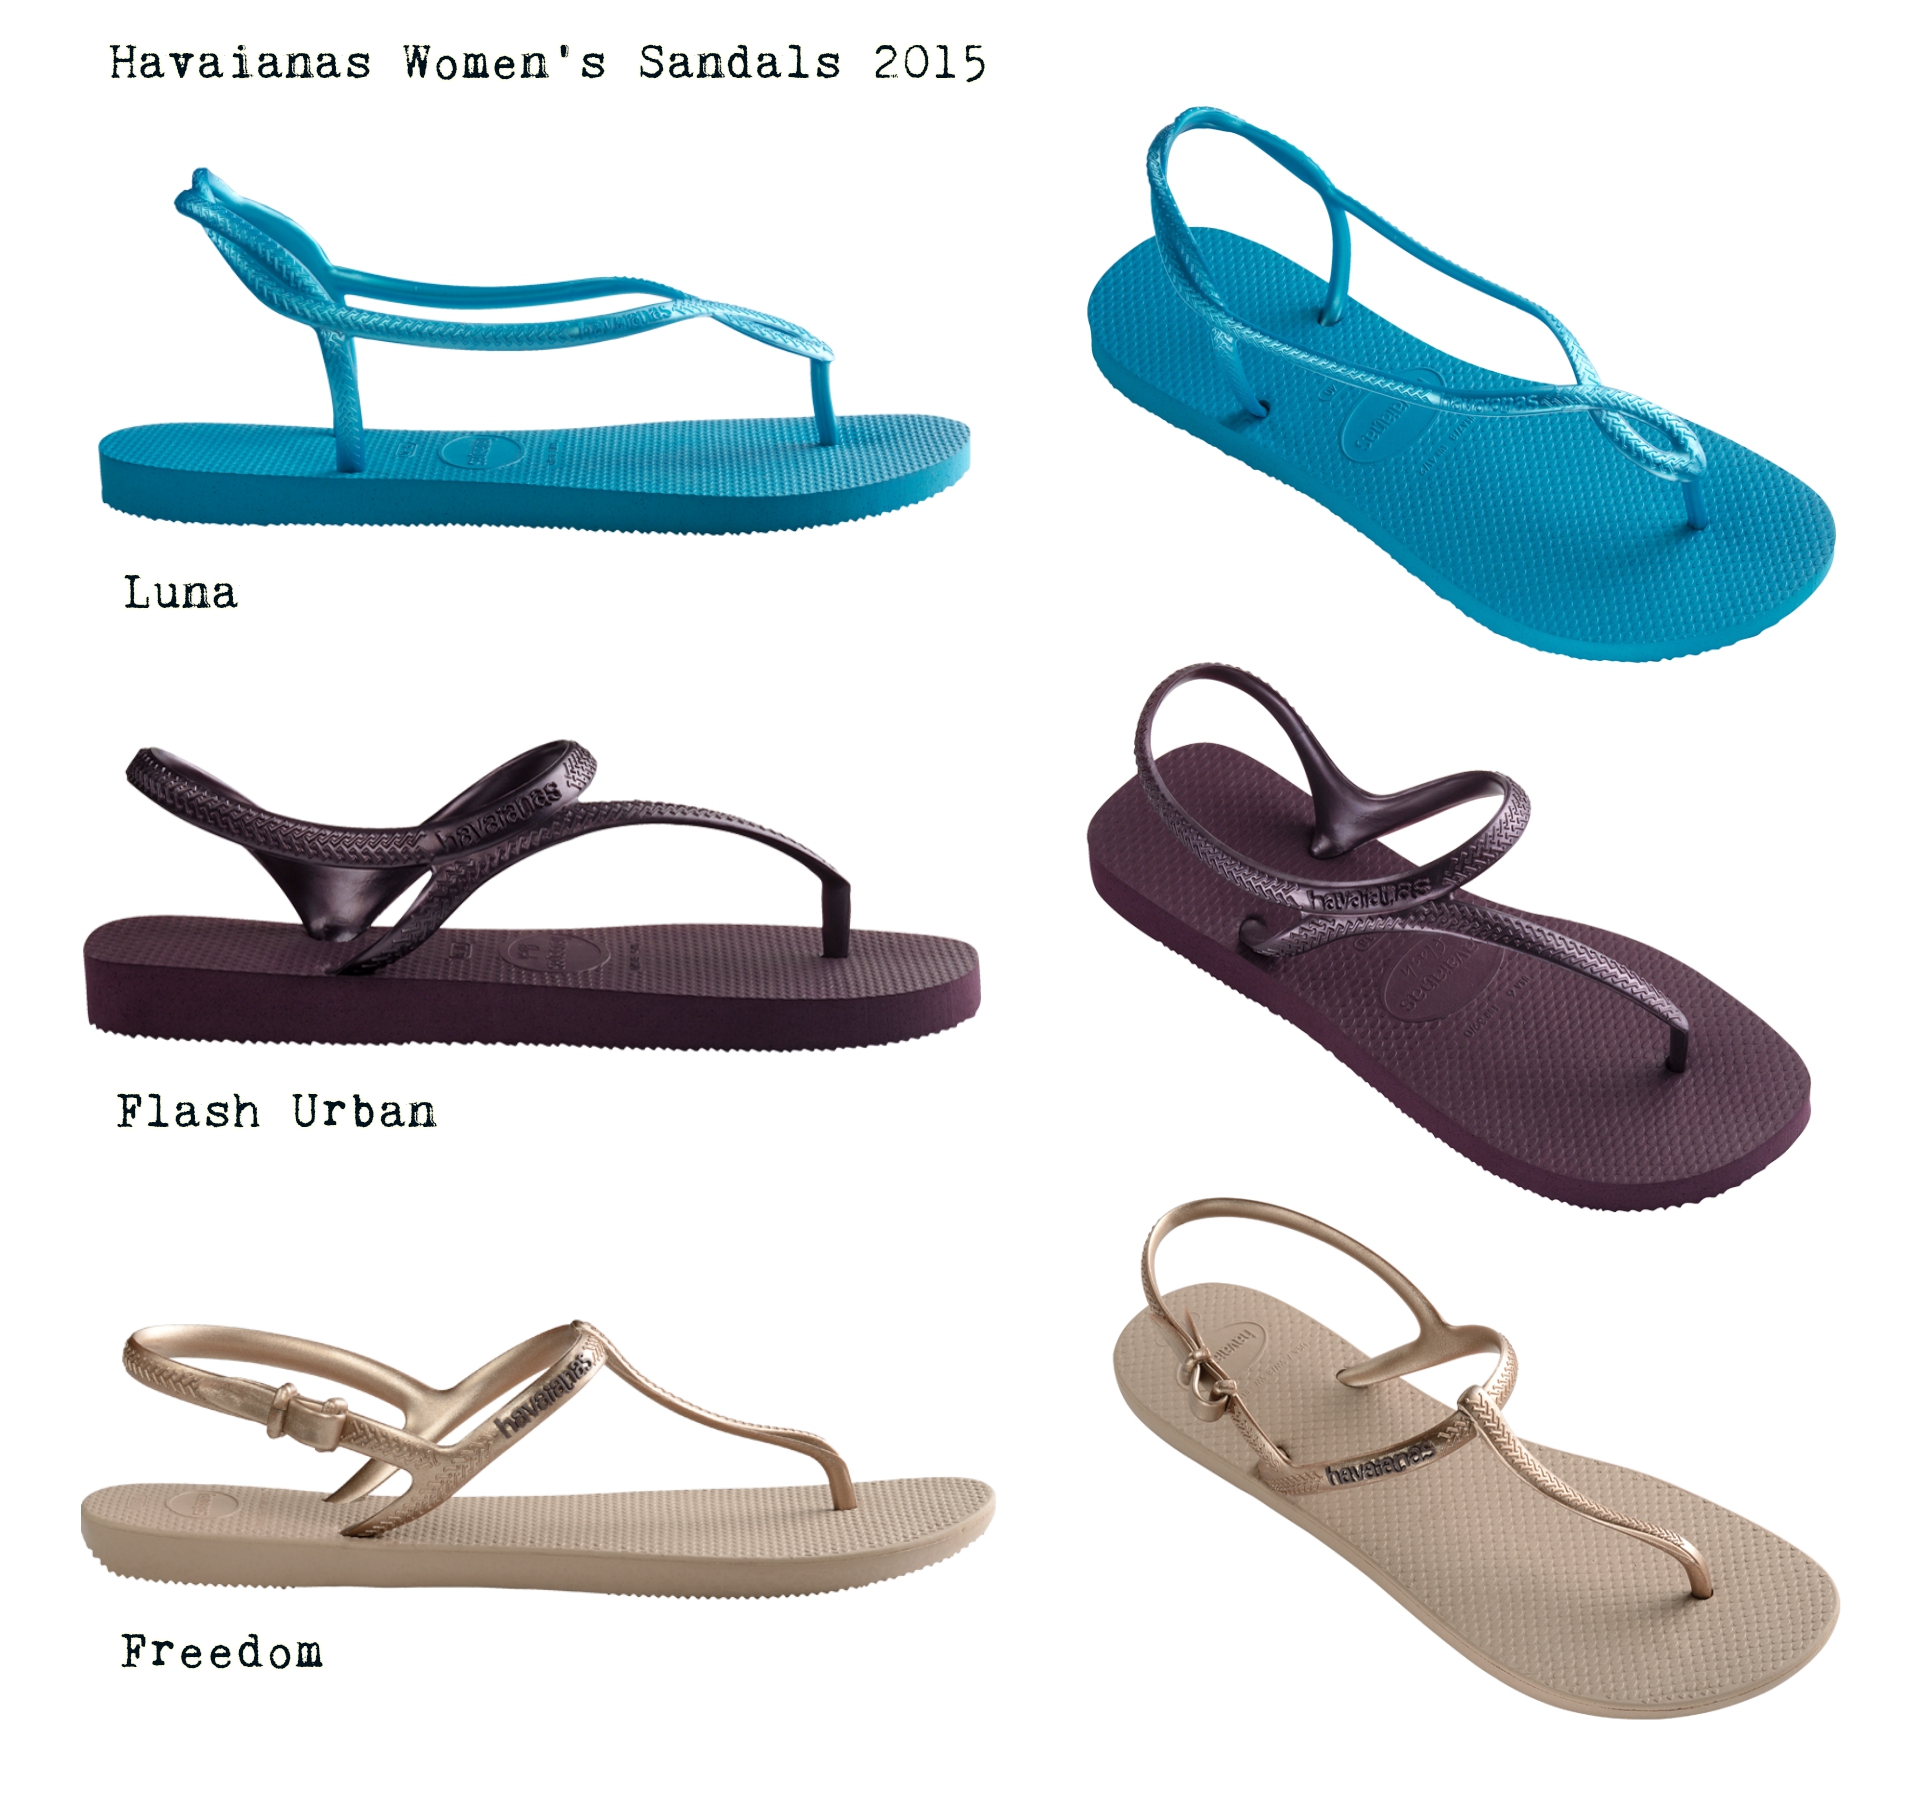 havaianas-2015-sandals-collage.jpg